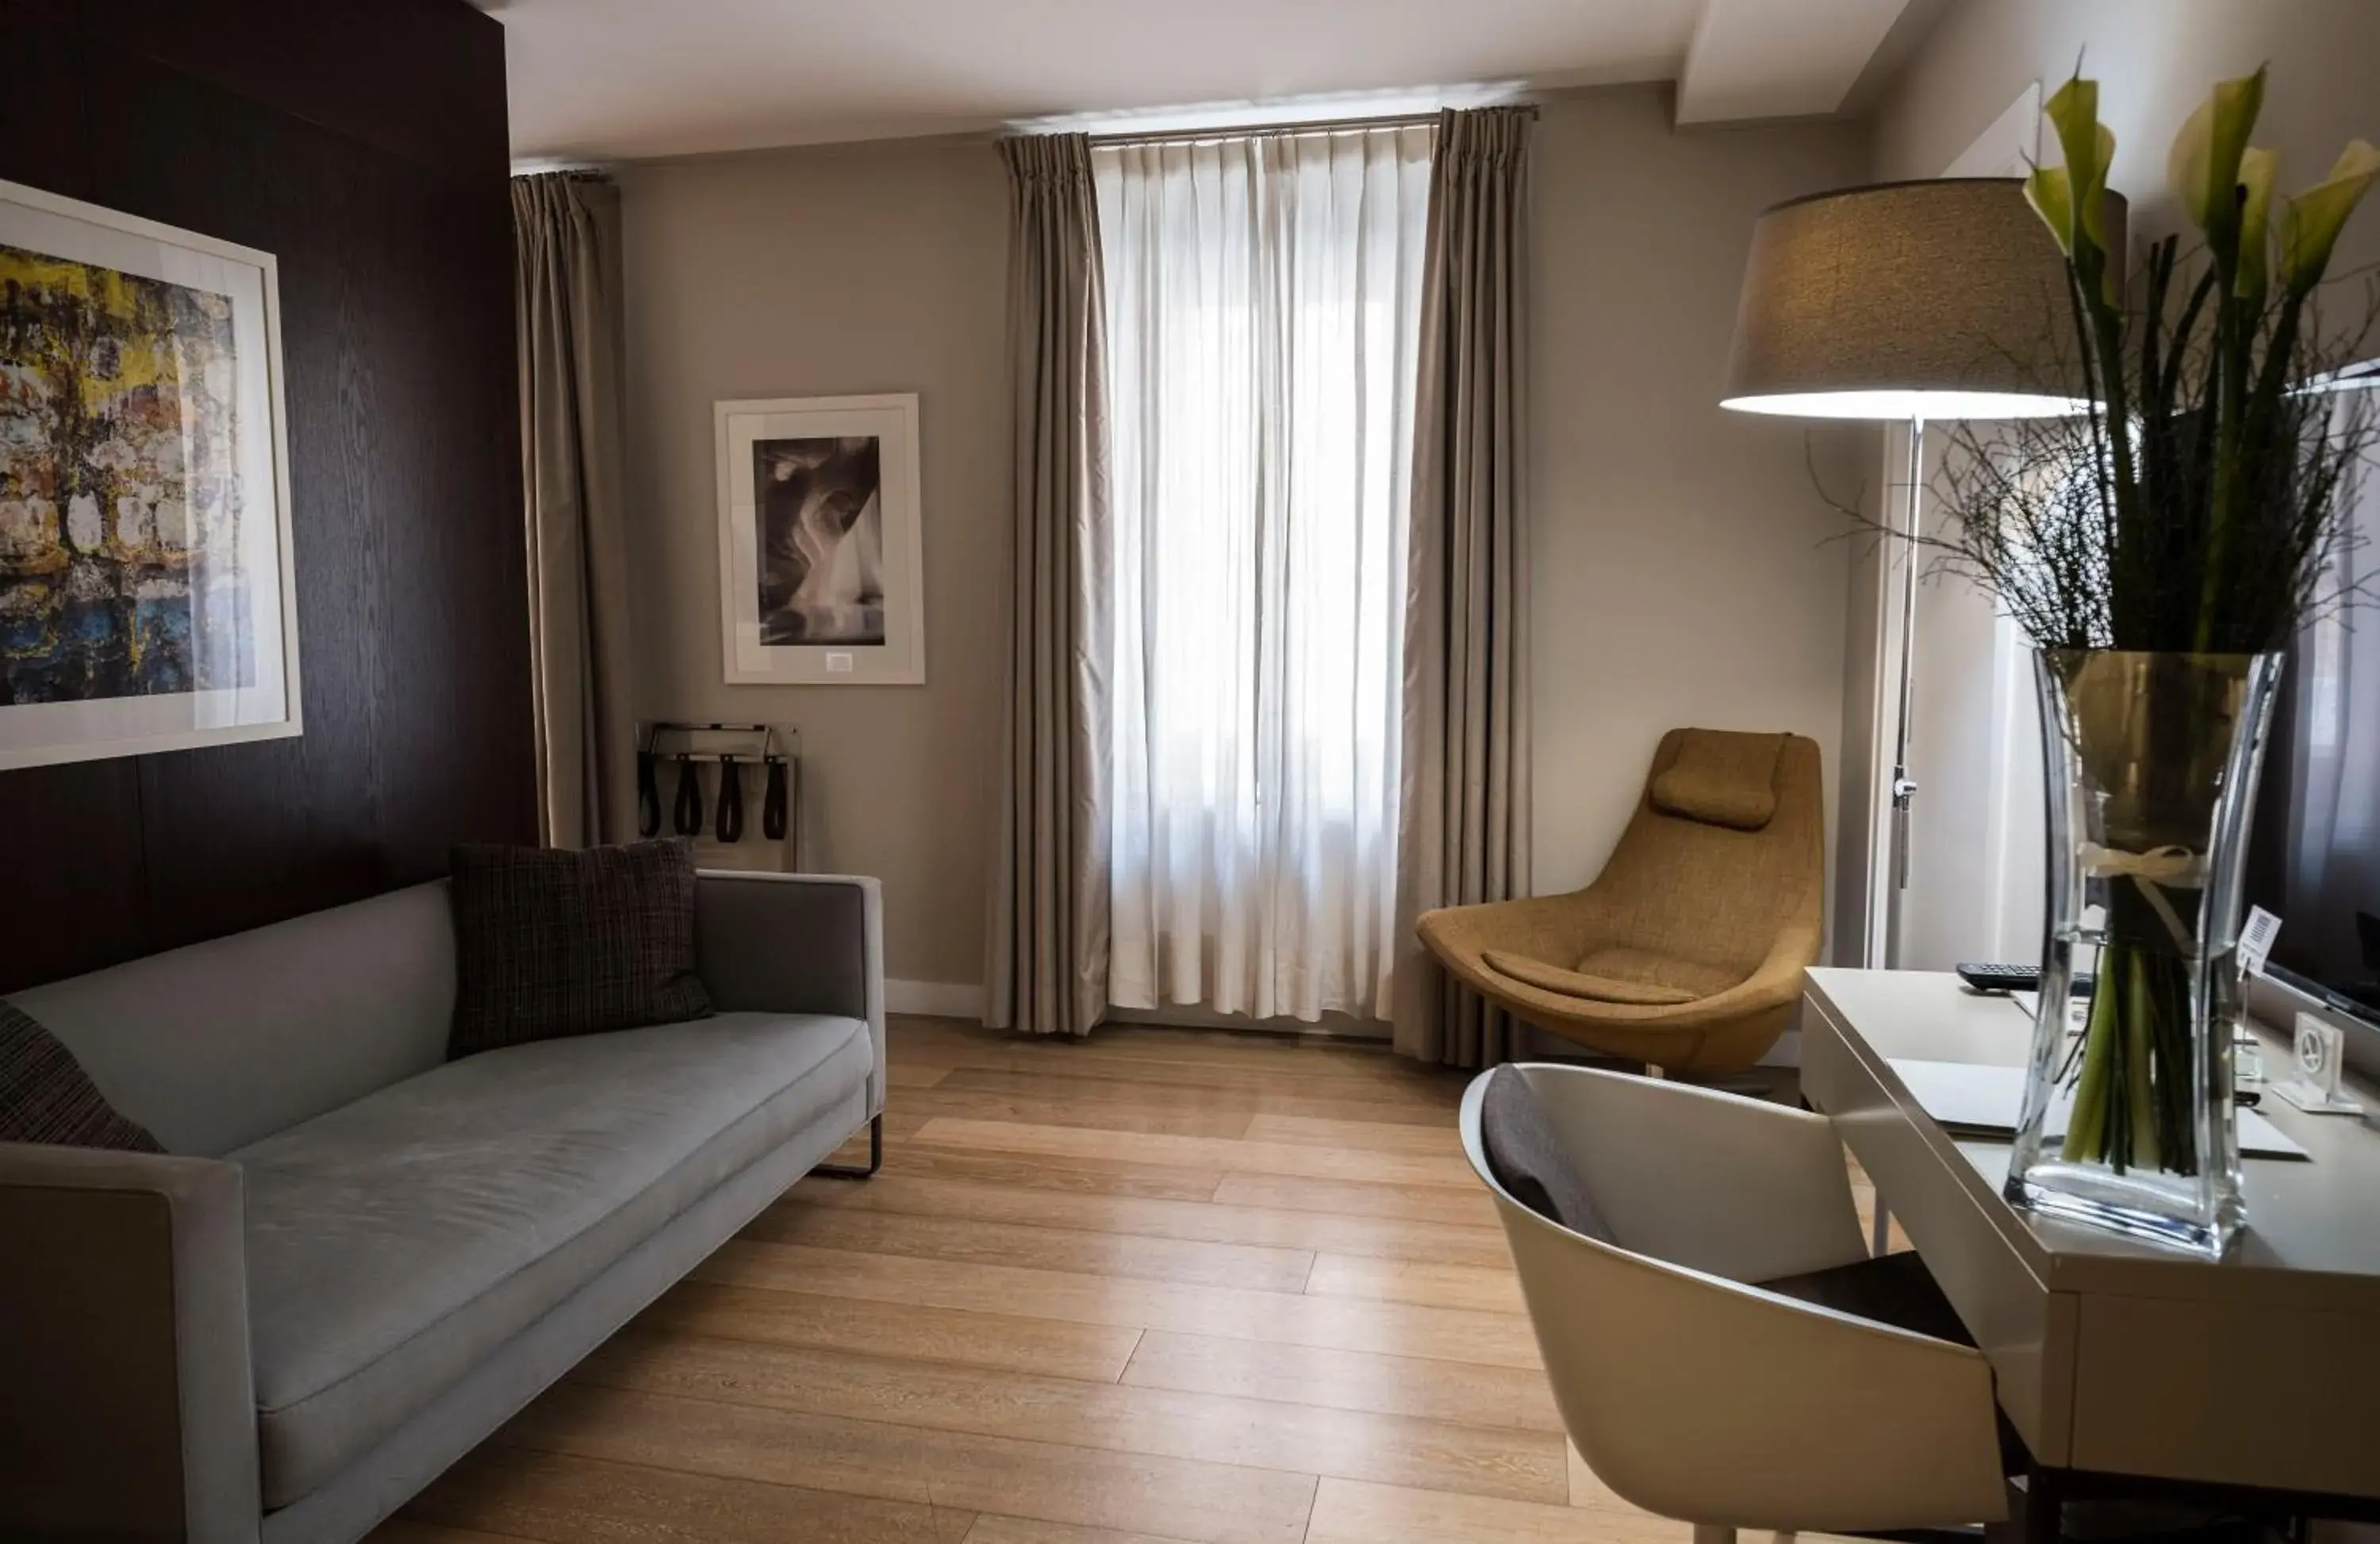 Decorative detail, Seating Area in Escalus Luxury Suites Verona